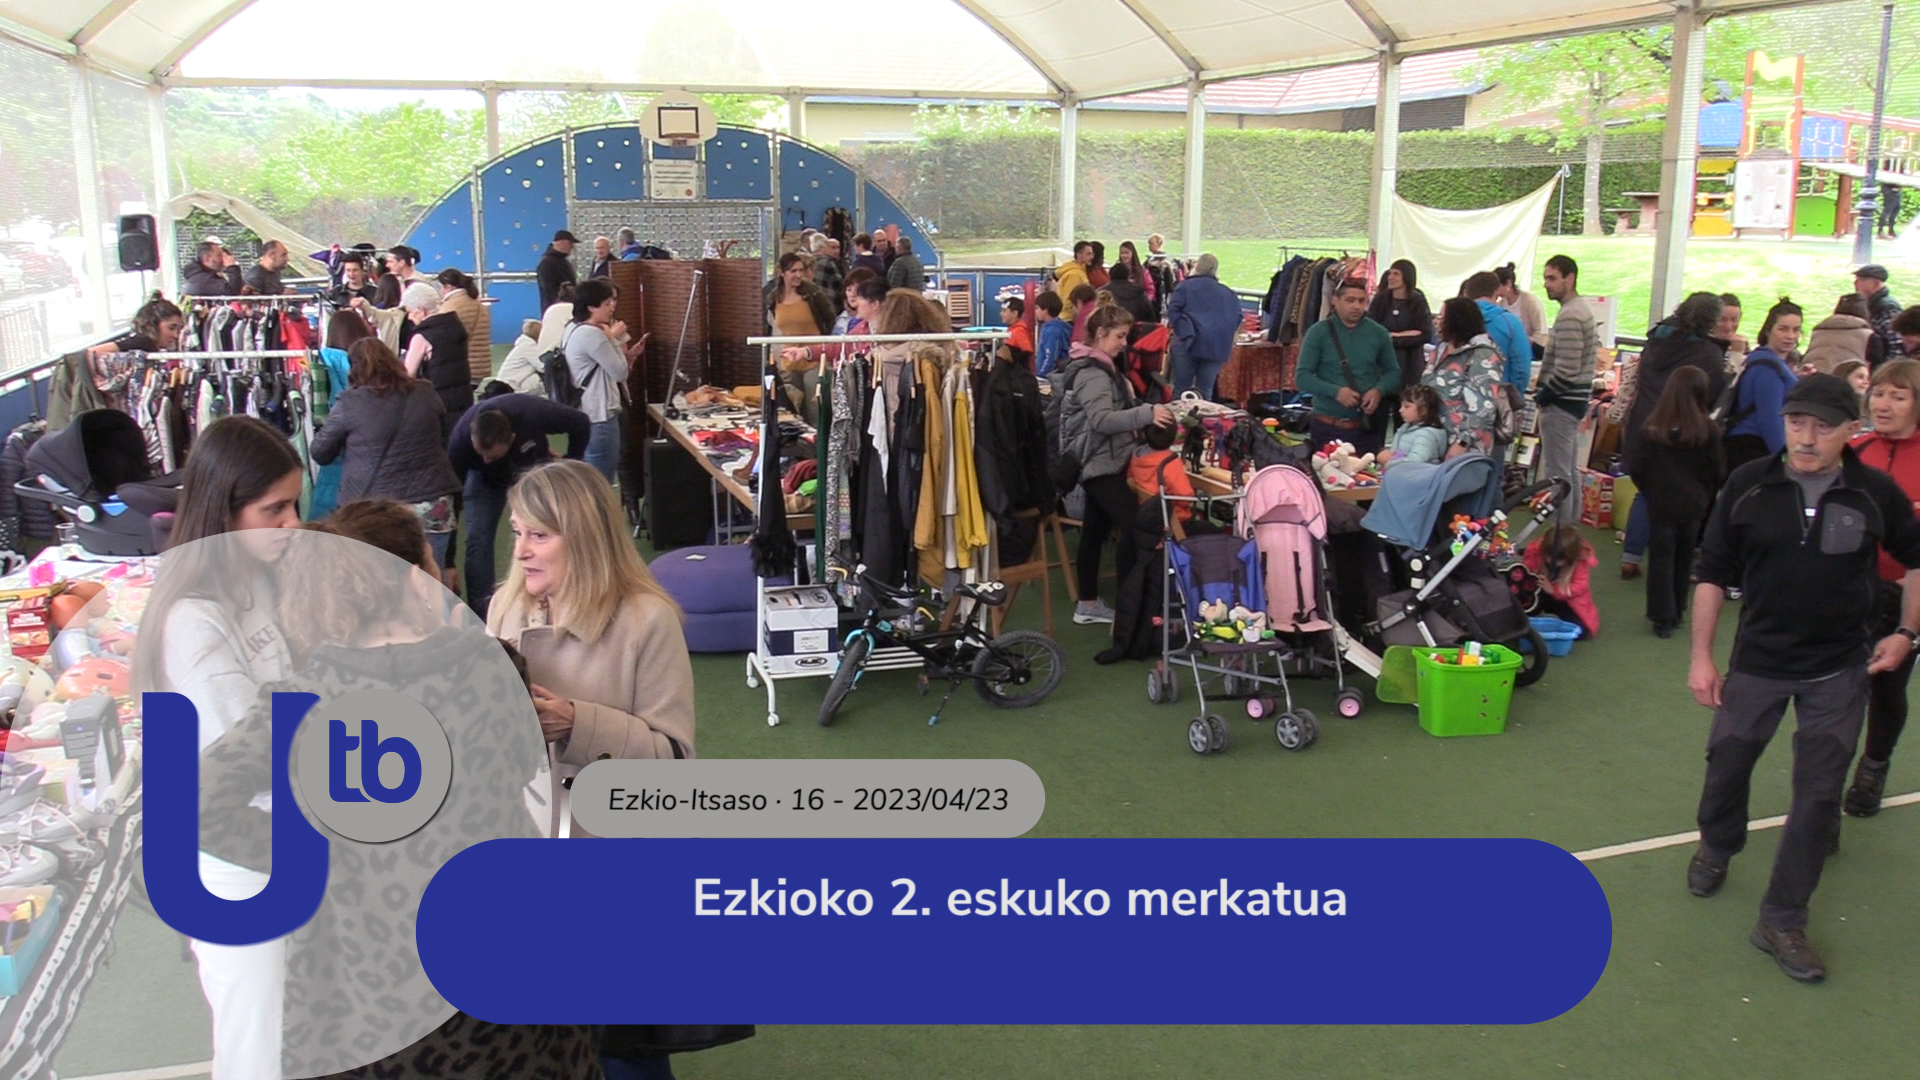 Mercado de segunda mano de Ezkio / Ezkioko 2. eskuko merkatua